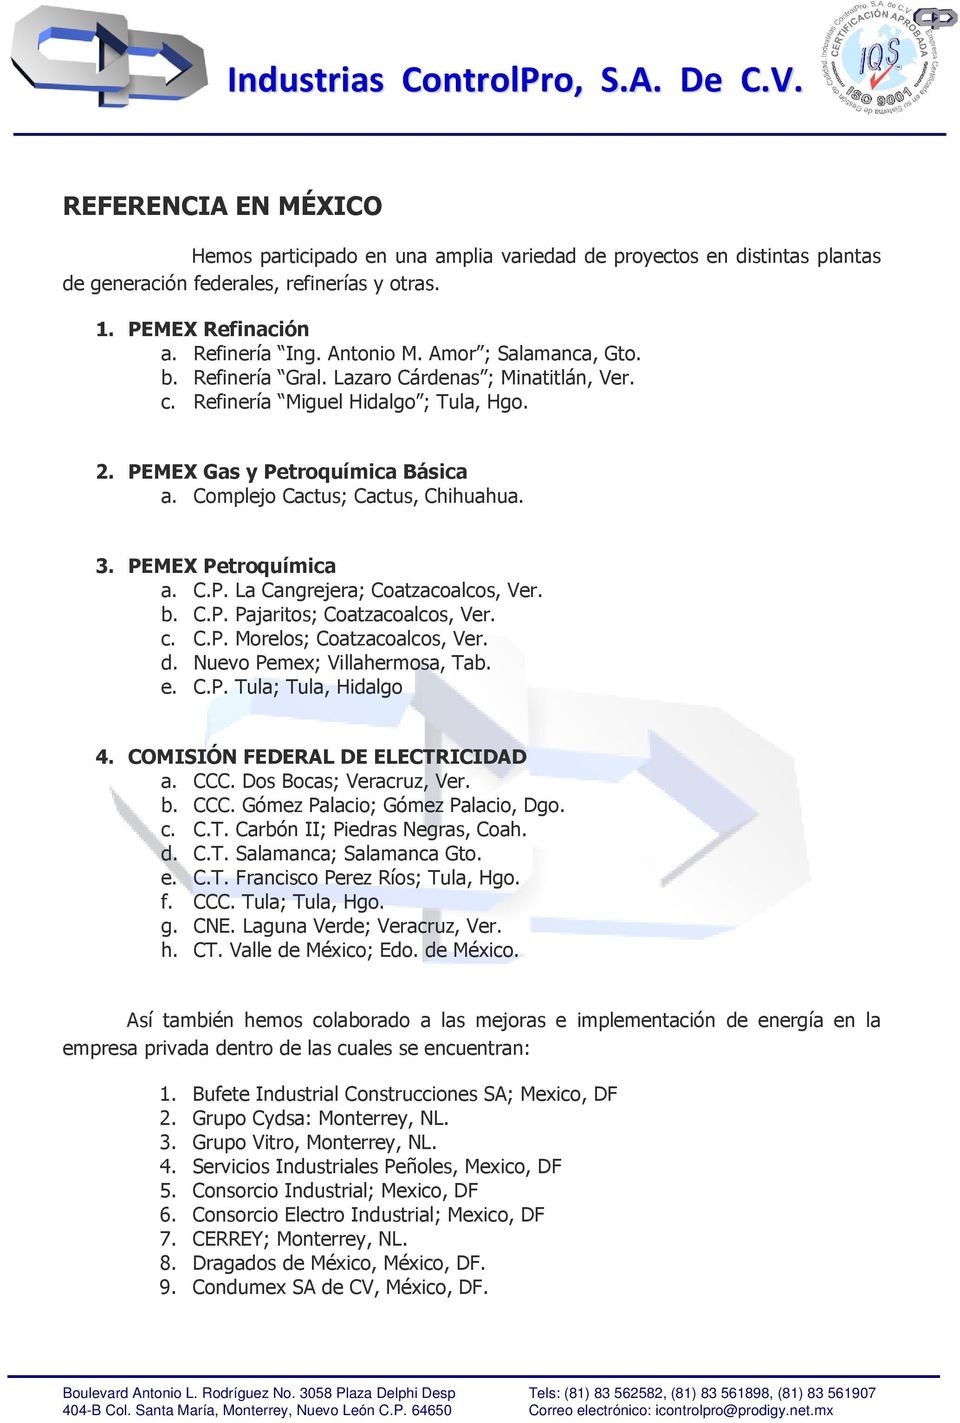 PEMEX Petroquímica a. C.P. La Cangrejera; Coatzacoalcos, Ver. b. C.P. Pajaritos; Coatzacoalcos, Ver. c. C.P. Morelos; Coatzacoalcos, Ver. d. Nuevo Pemex; Villahermosa, Tab. e. C.P. Tula; Tula, Hidalgo 4.